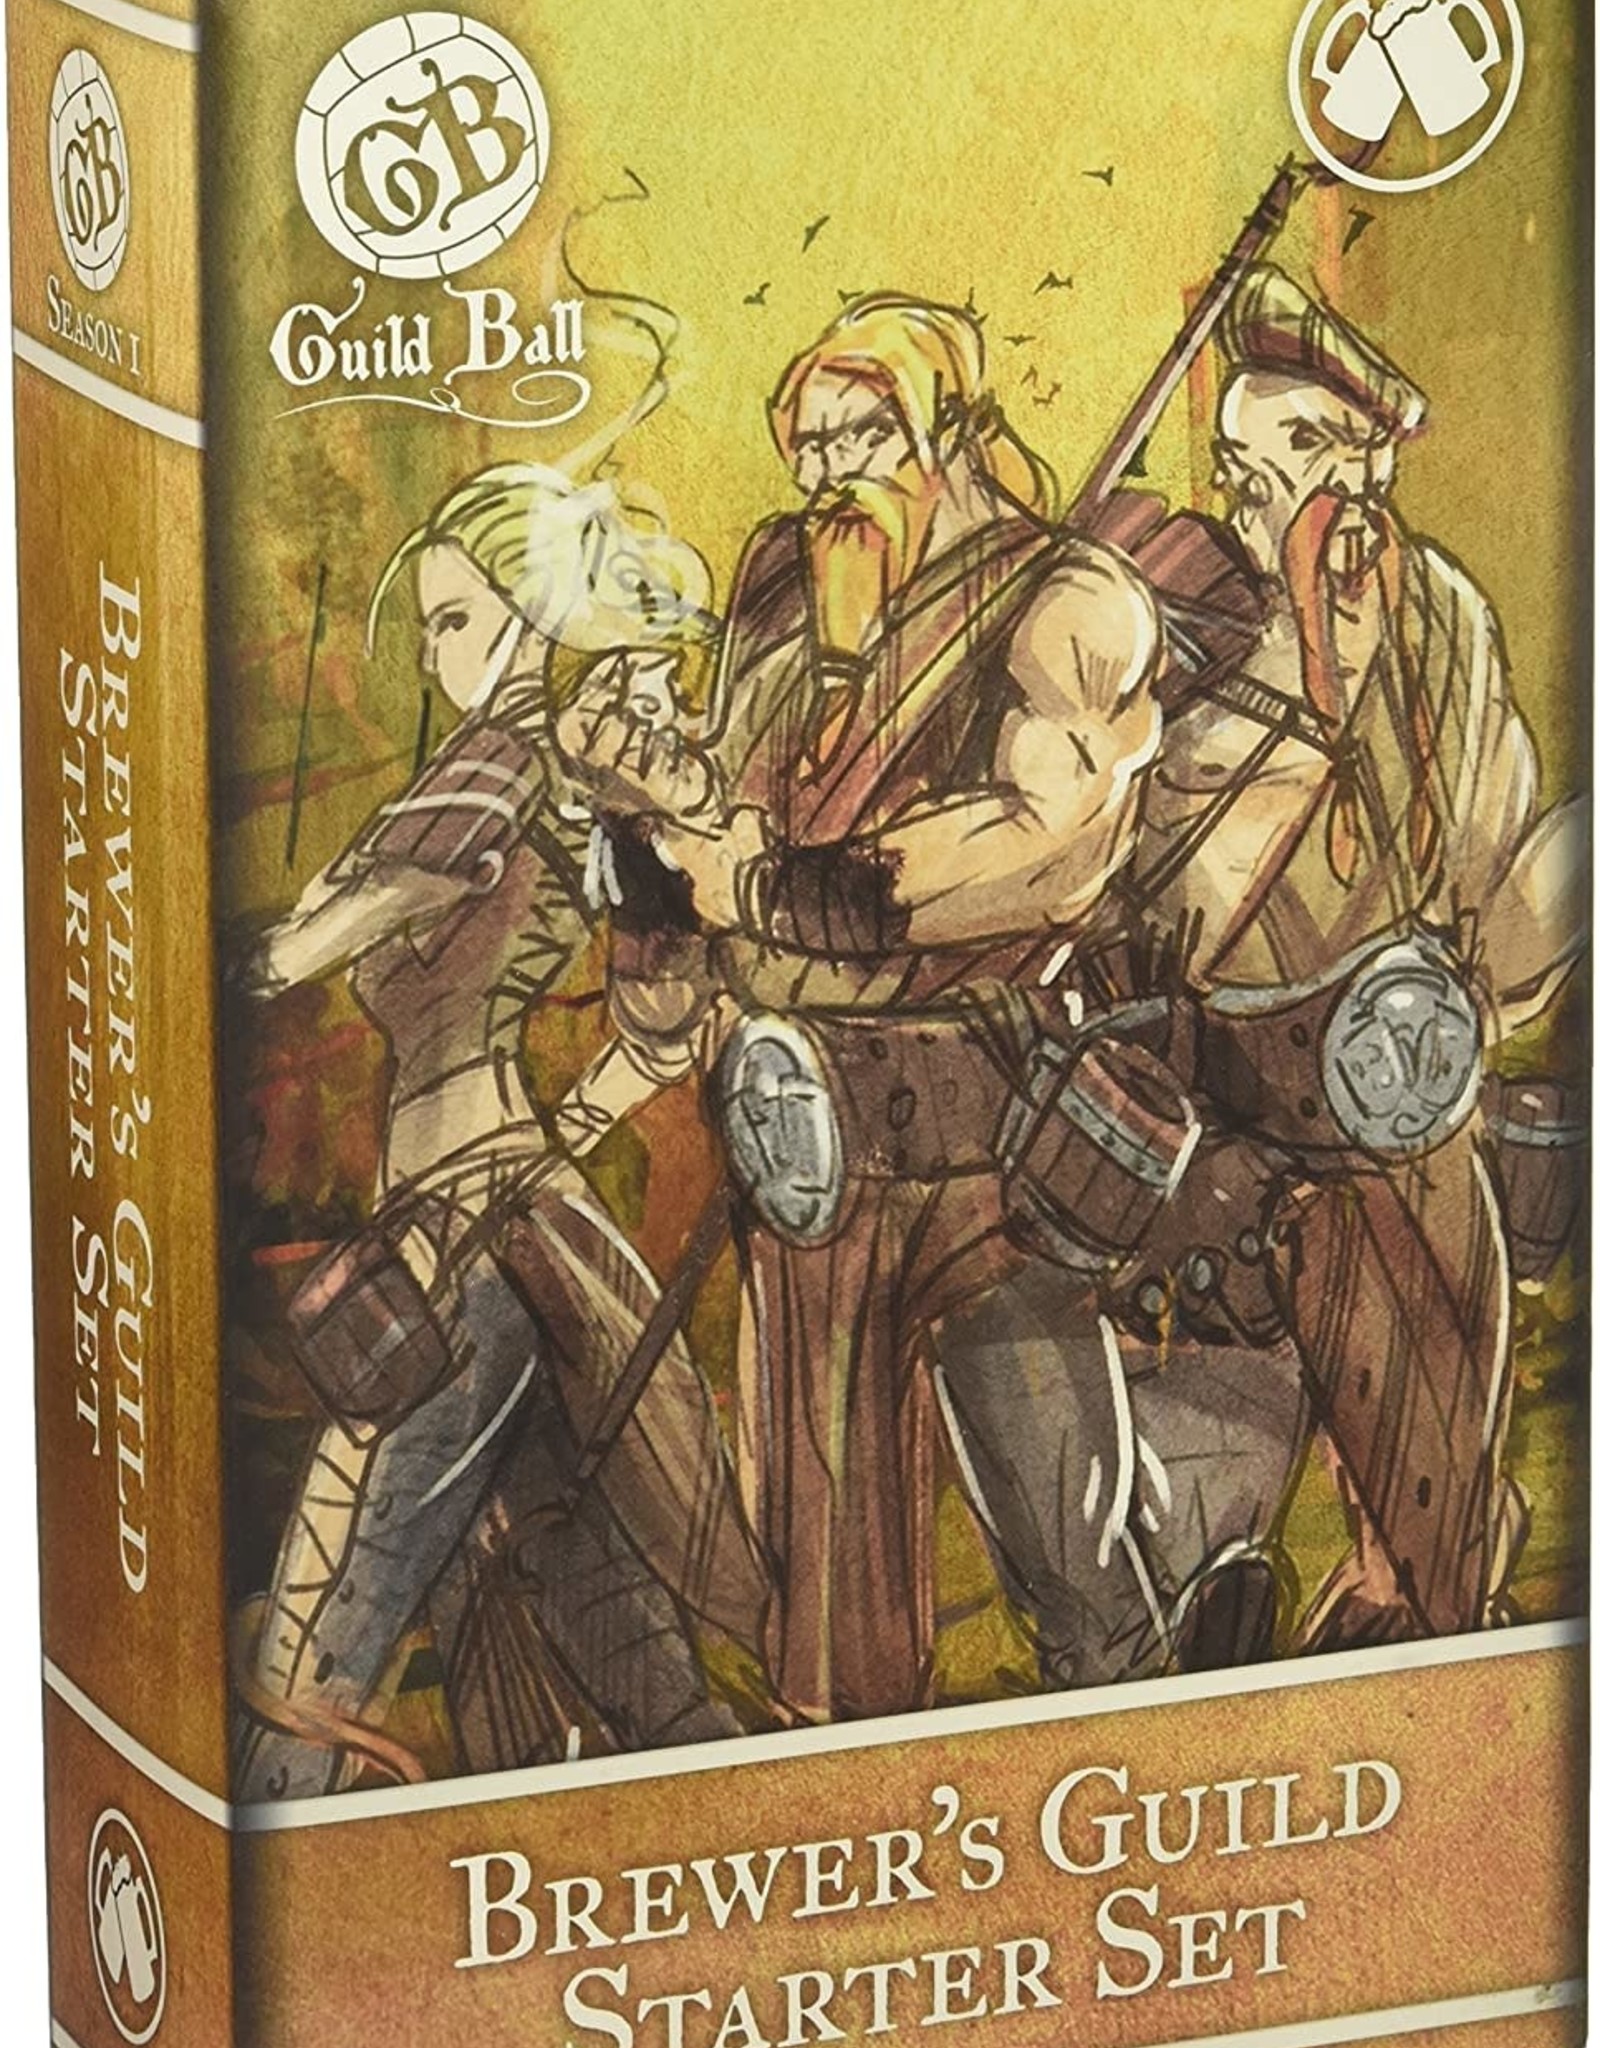 Guild Ball Brewers Guild Starter - Season 1